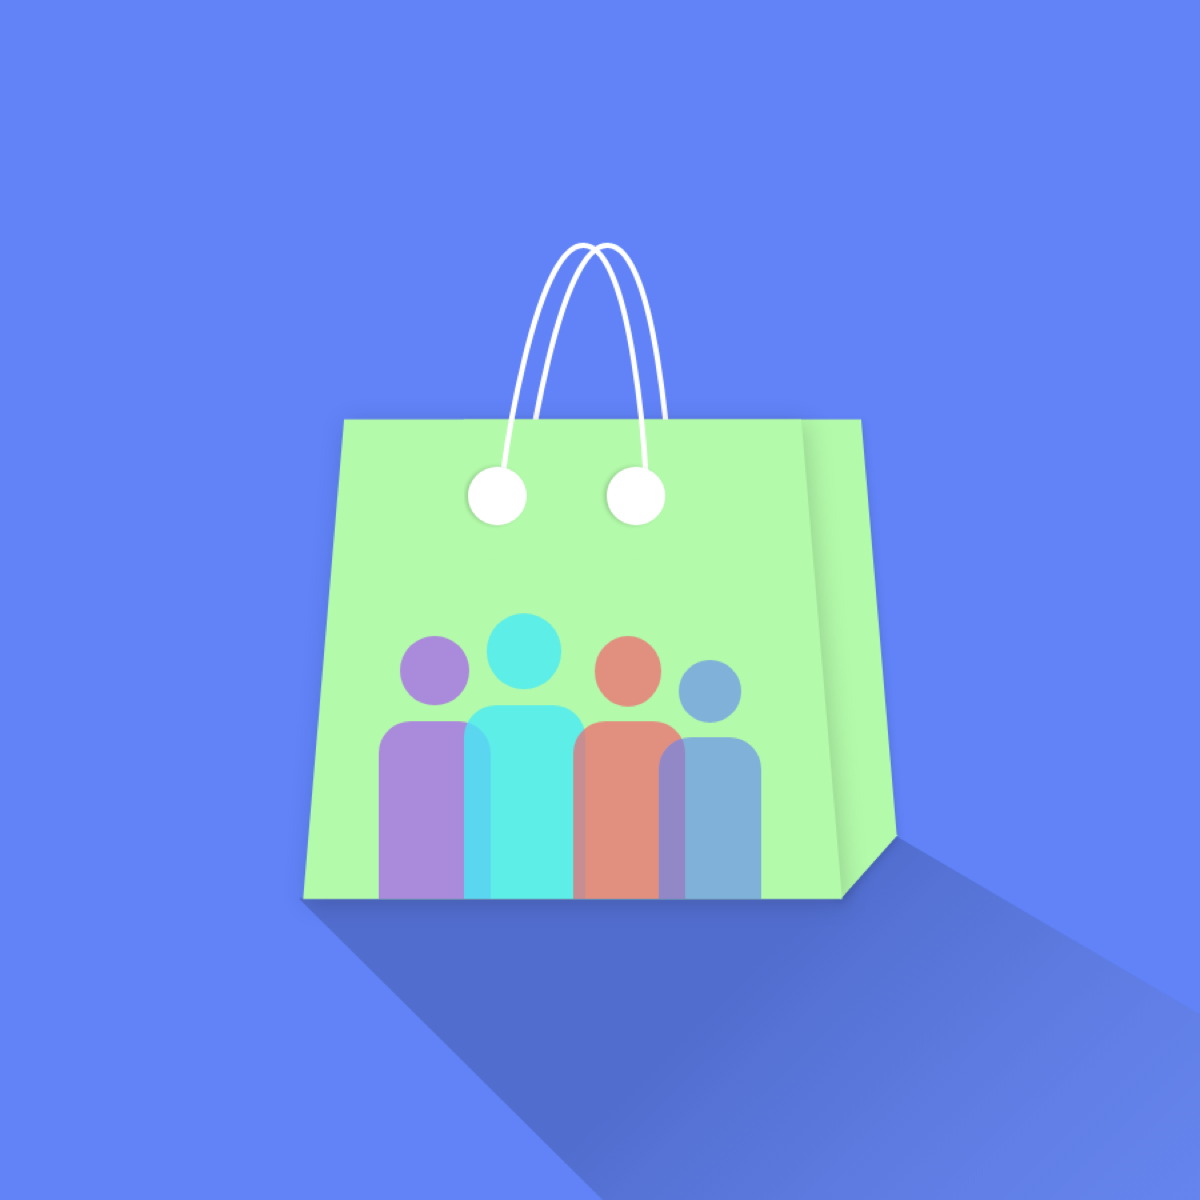 Group Buy ‑ Social E‑commerce